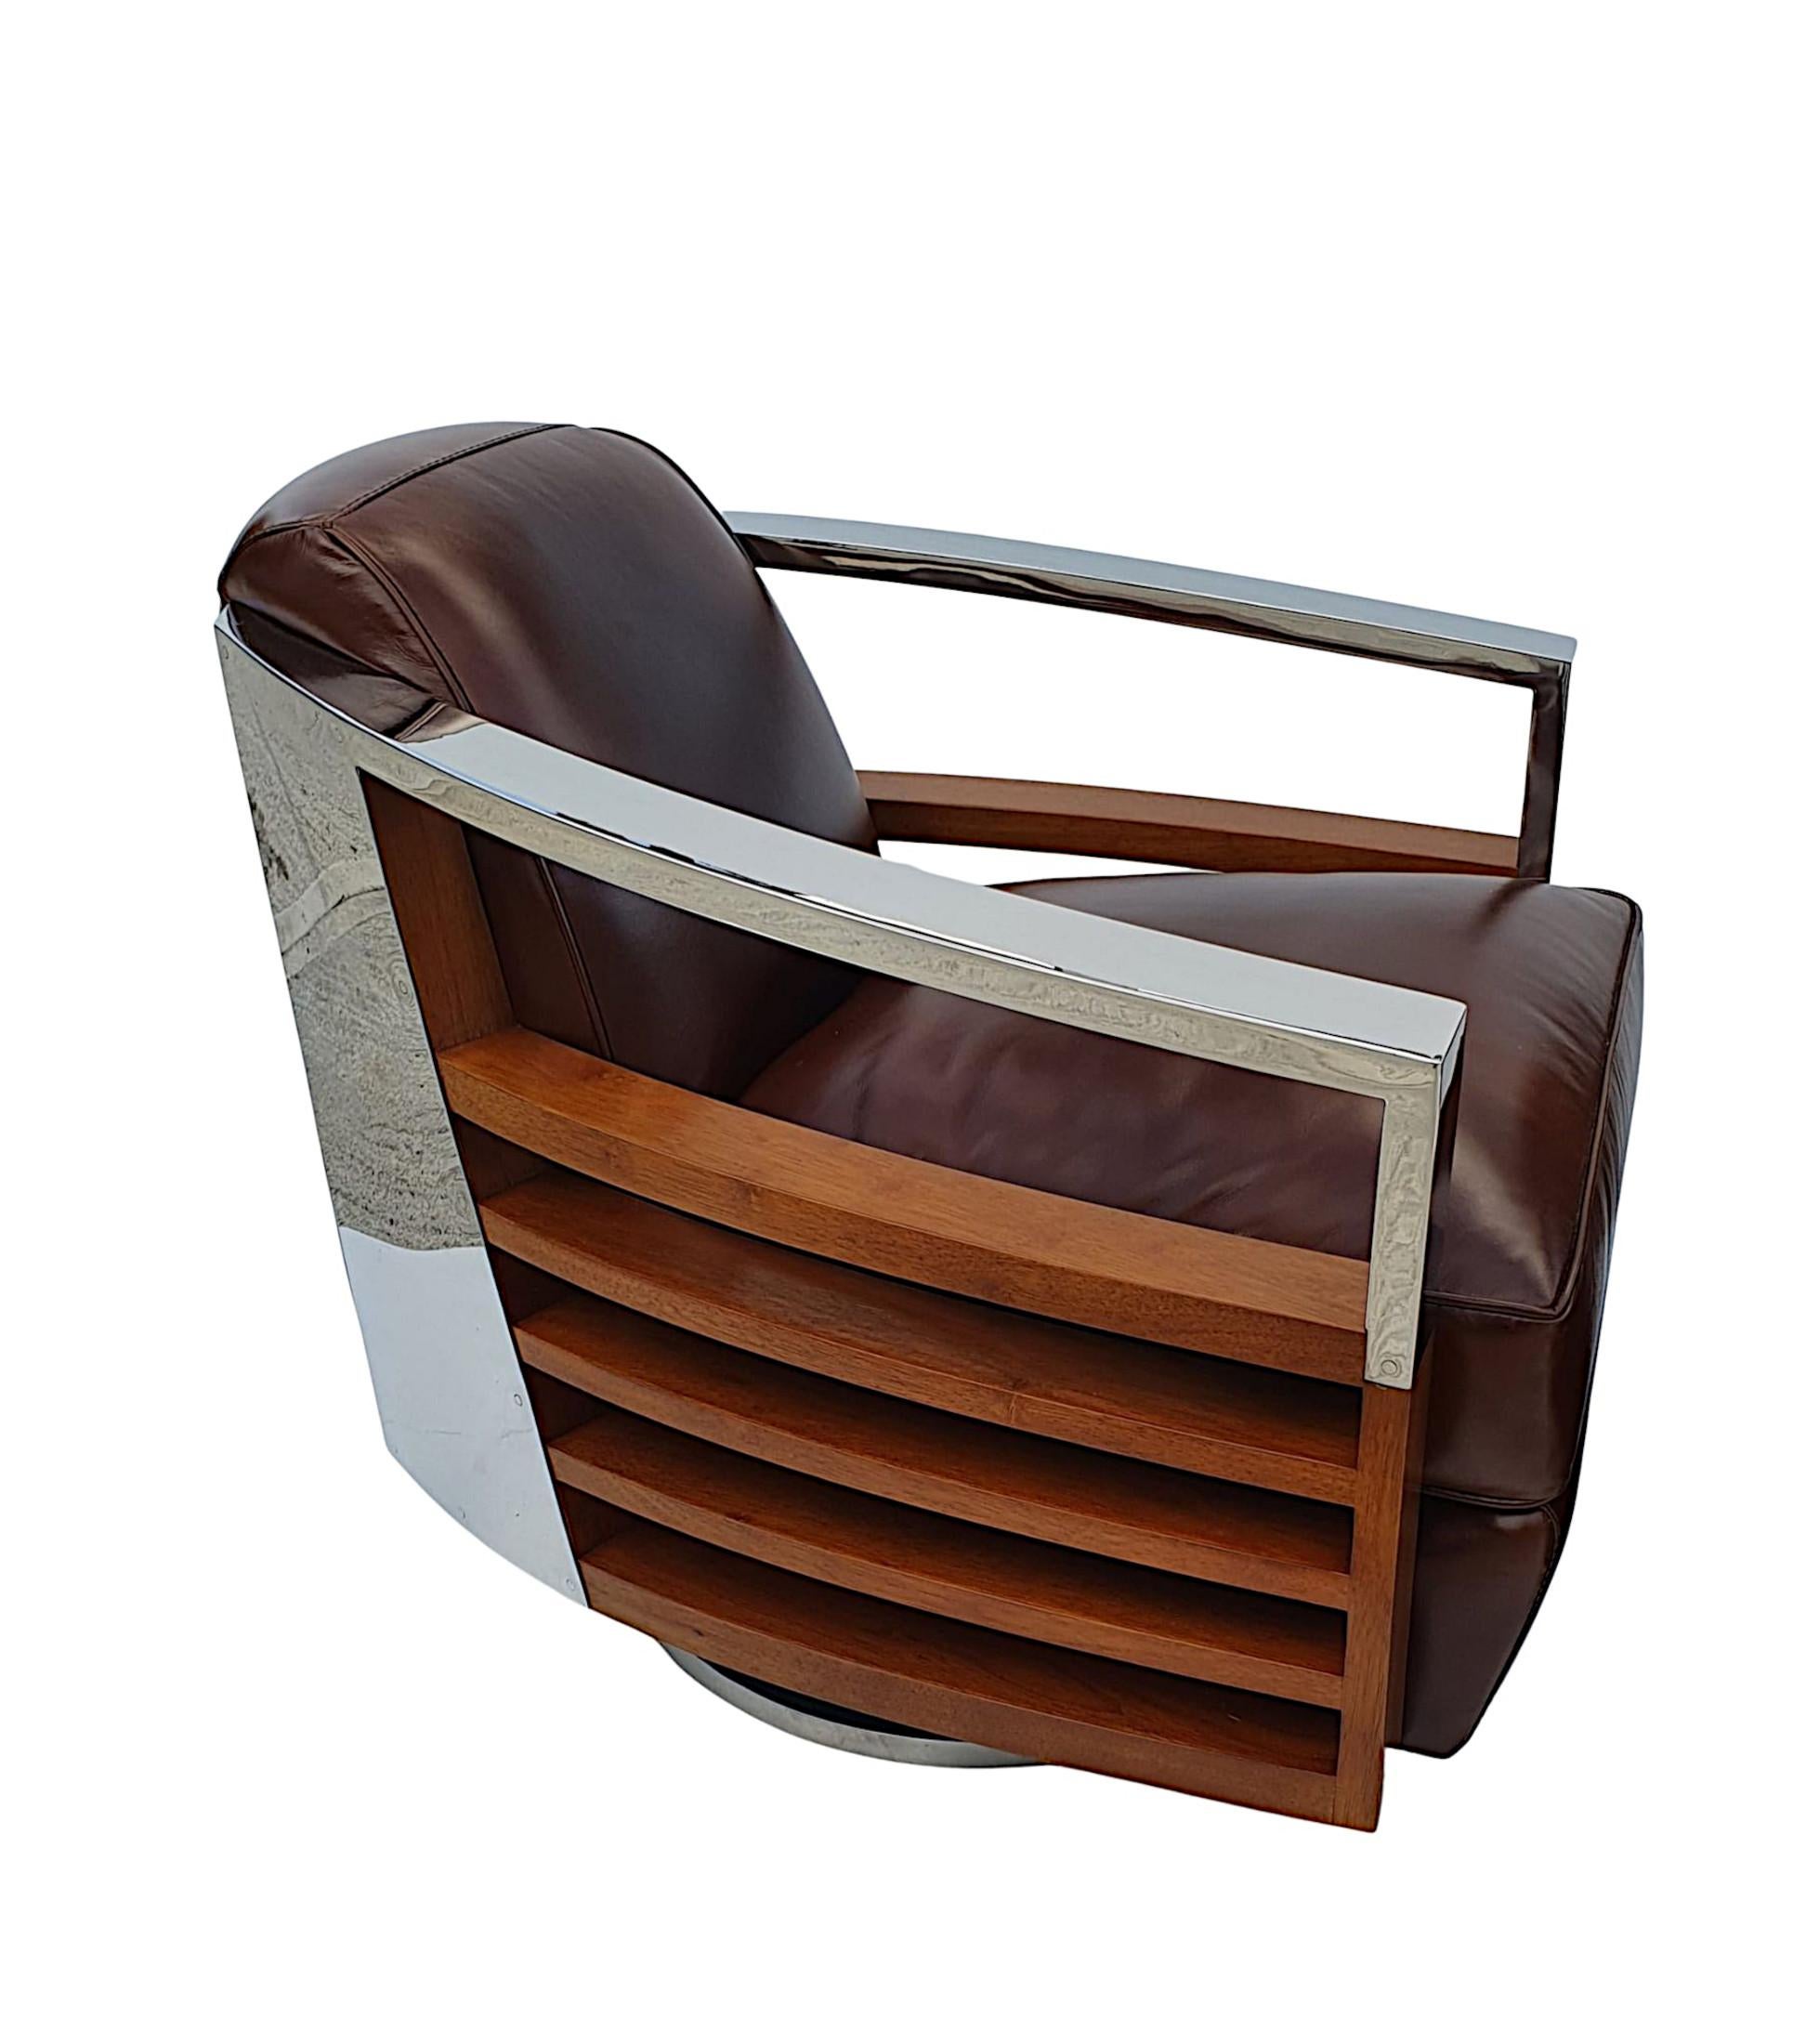 Un superbe fauteuil tournant contemporain de qualité dans le style Art Déco. Le dossier et l'assise rembourrés en cuir brun sont flanqués d'accoudoirs courbes chromés, de panneaux chromés au dos et de superbes côtés incurvés et percés en bois de